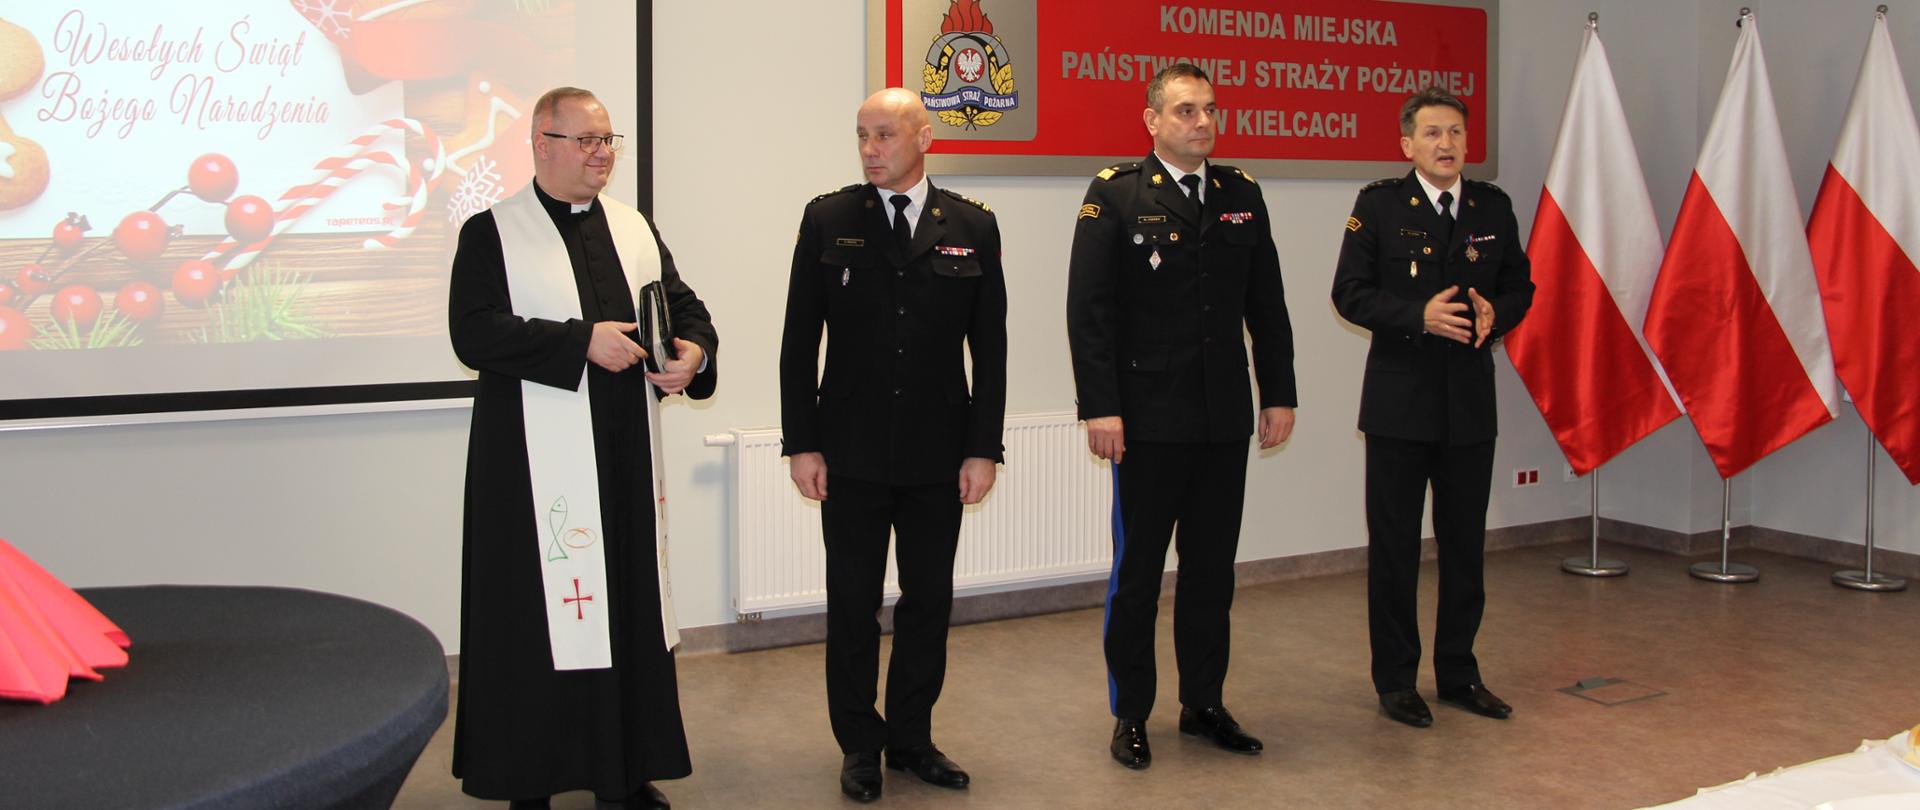 Zdjęcie przedstawia zaproszonych na uroczyste spotkanie opłatkowe gości którym towarzyszy gospodarz: komendant miejski PSP w Kielcach.